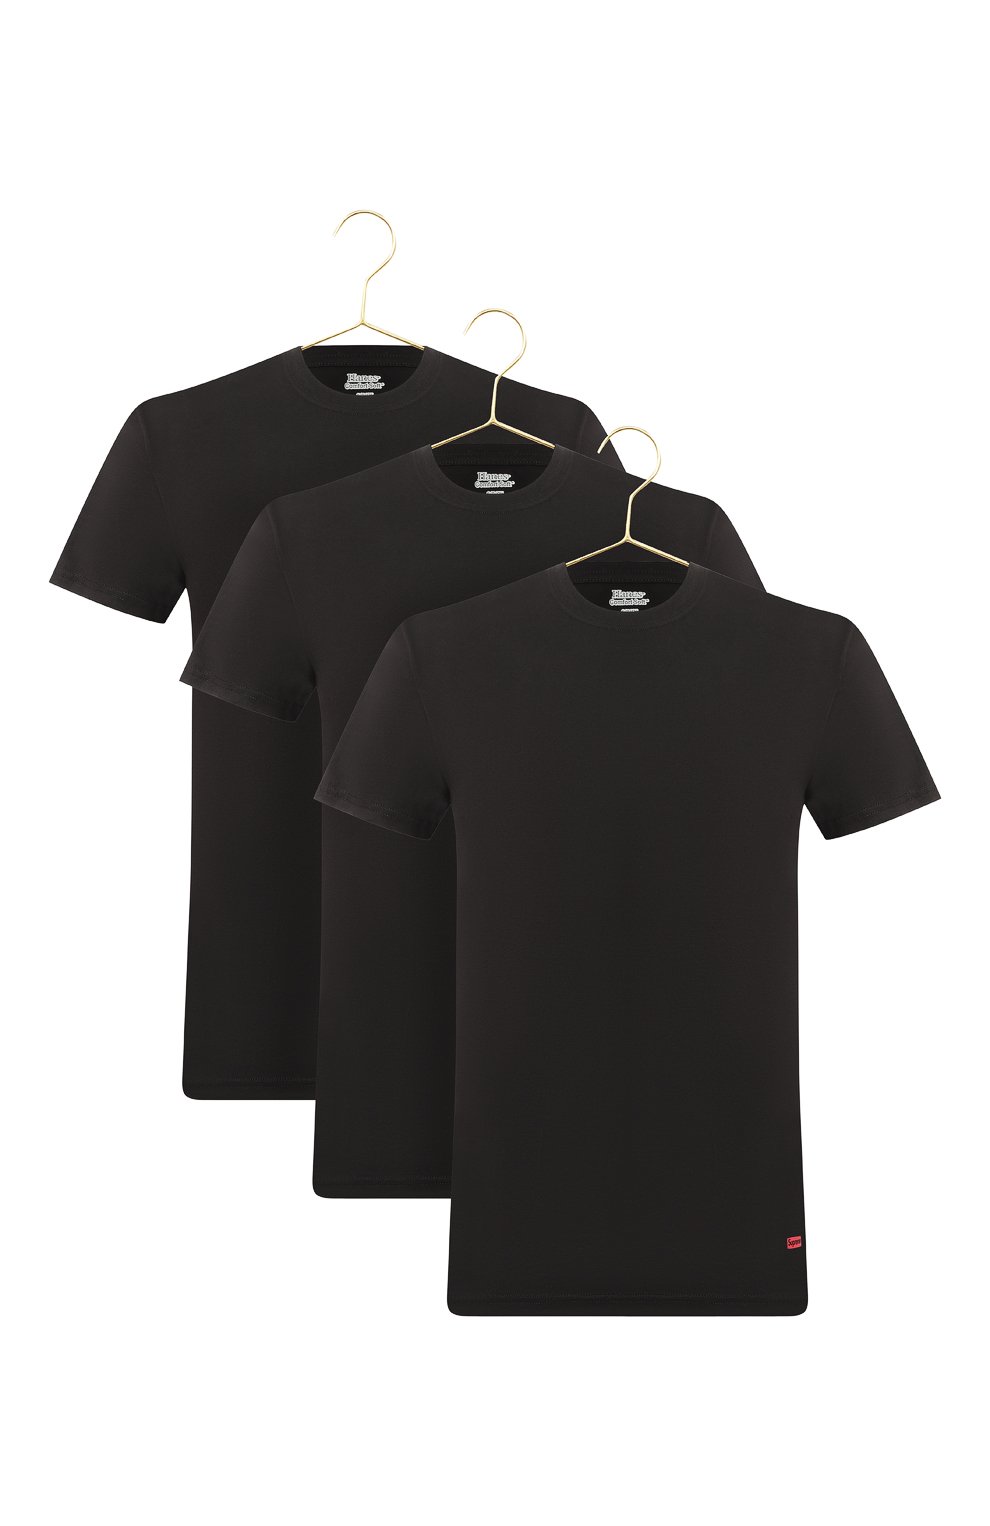 Комплект из трех футболок | Supreme | Чёрный - 1